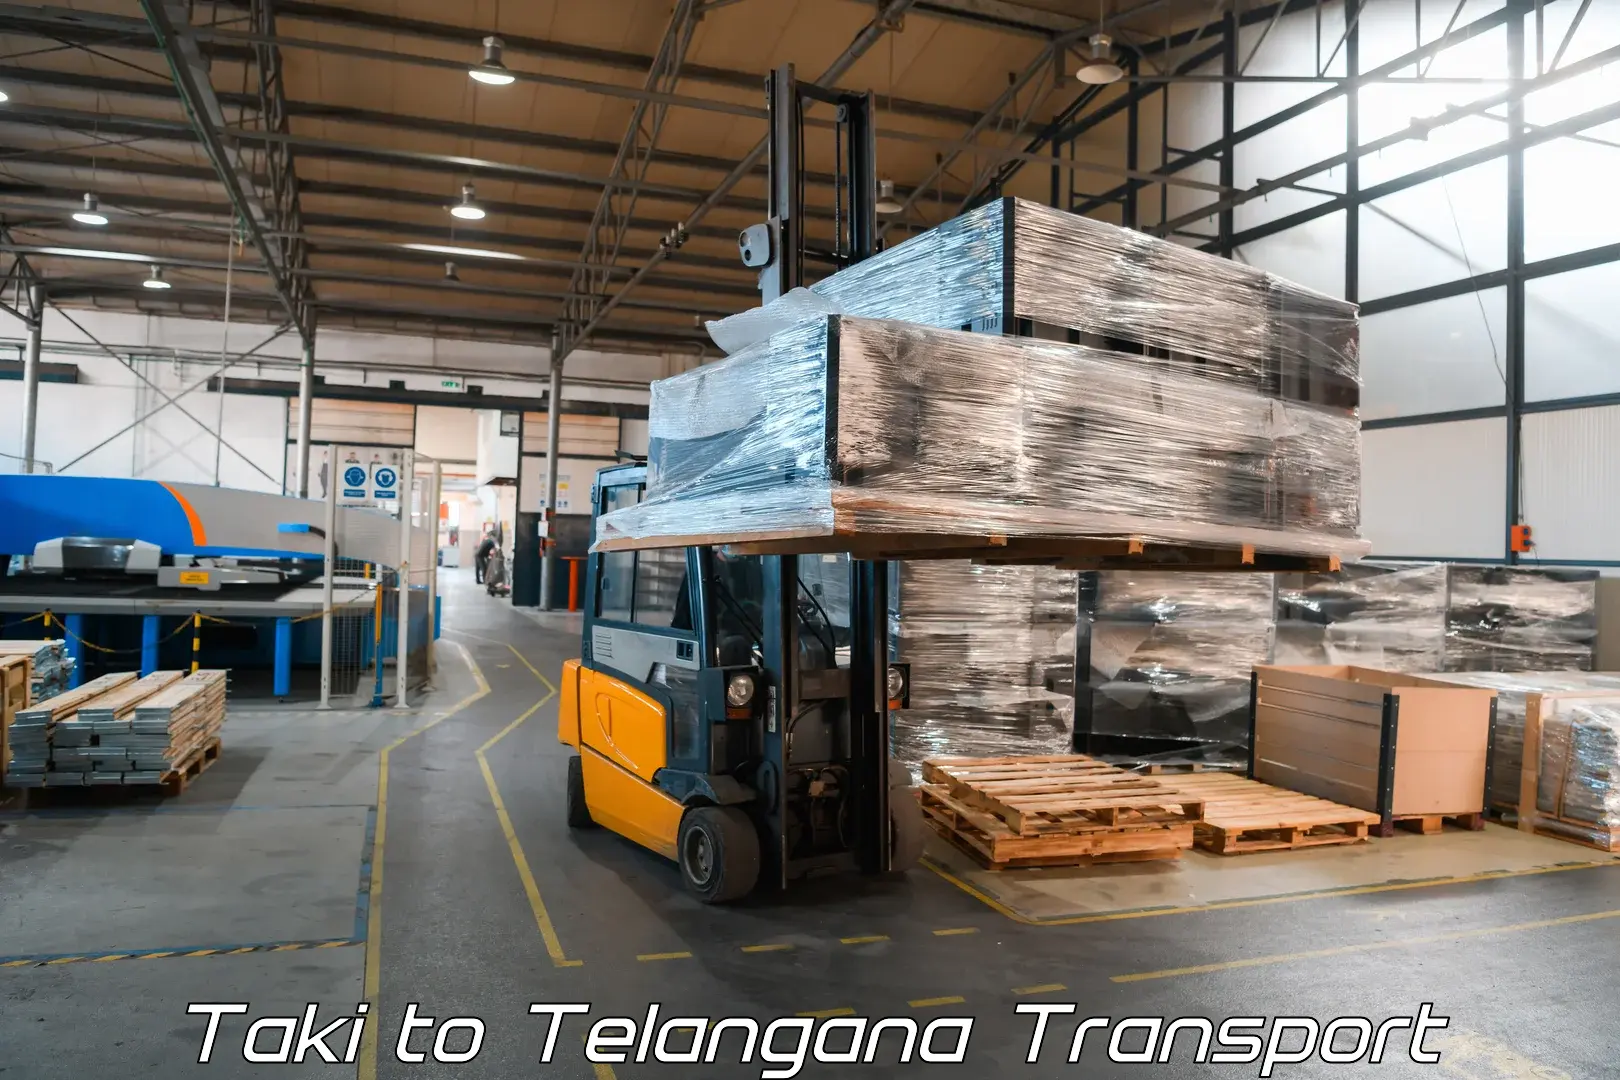 Air freight transport services Taki to Nellikuduru